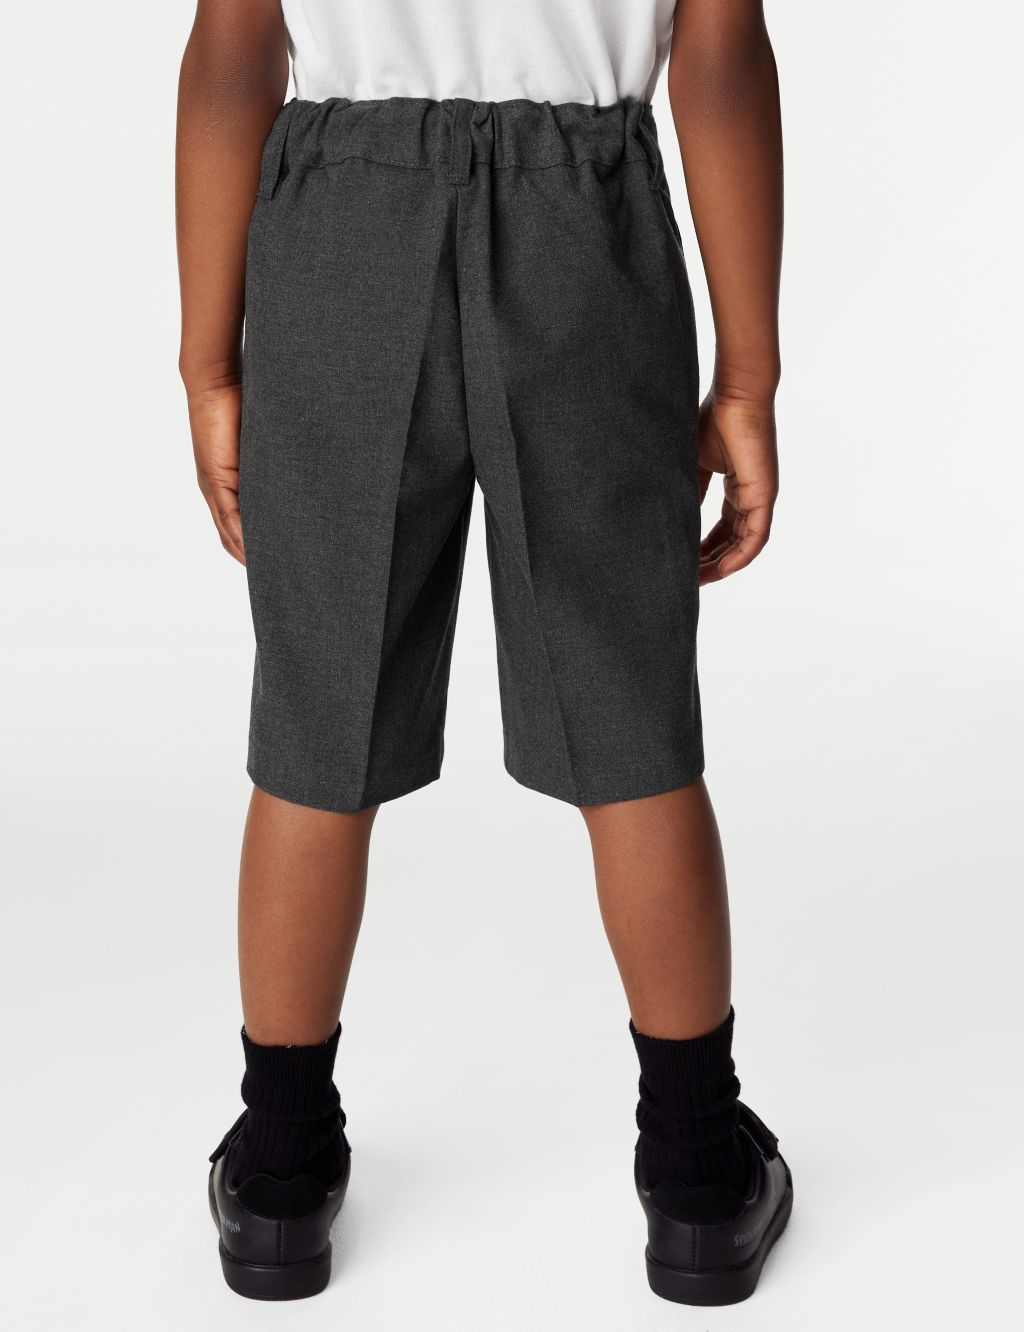 2pk Boys' Slim Leg Plus Waist School Shorts (4-14 Yrs) image 3